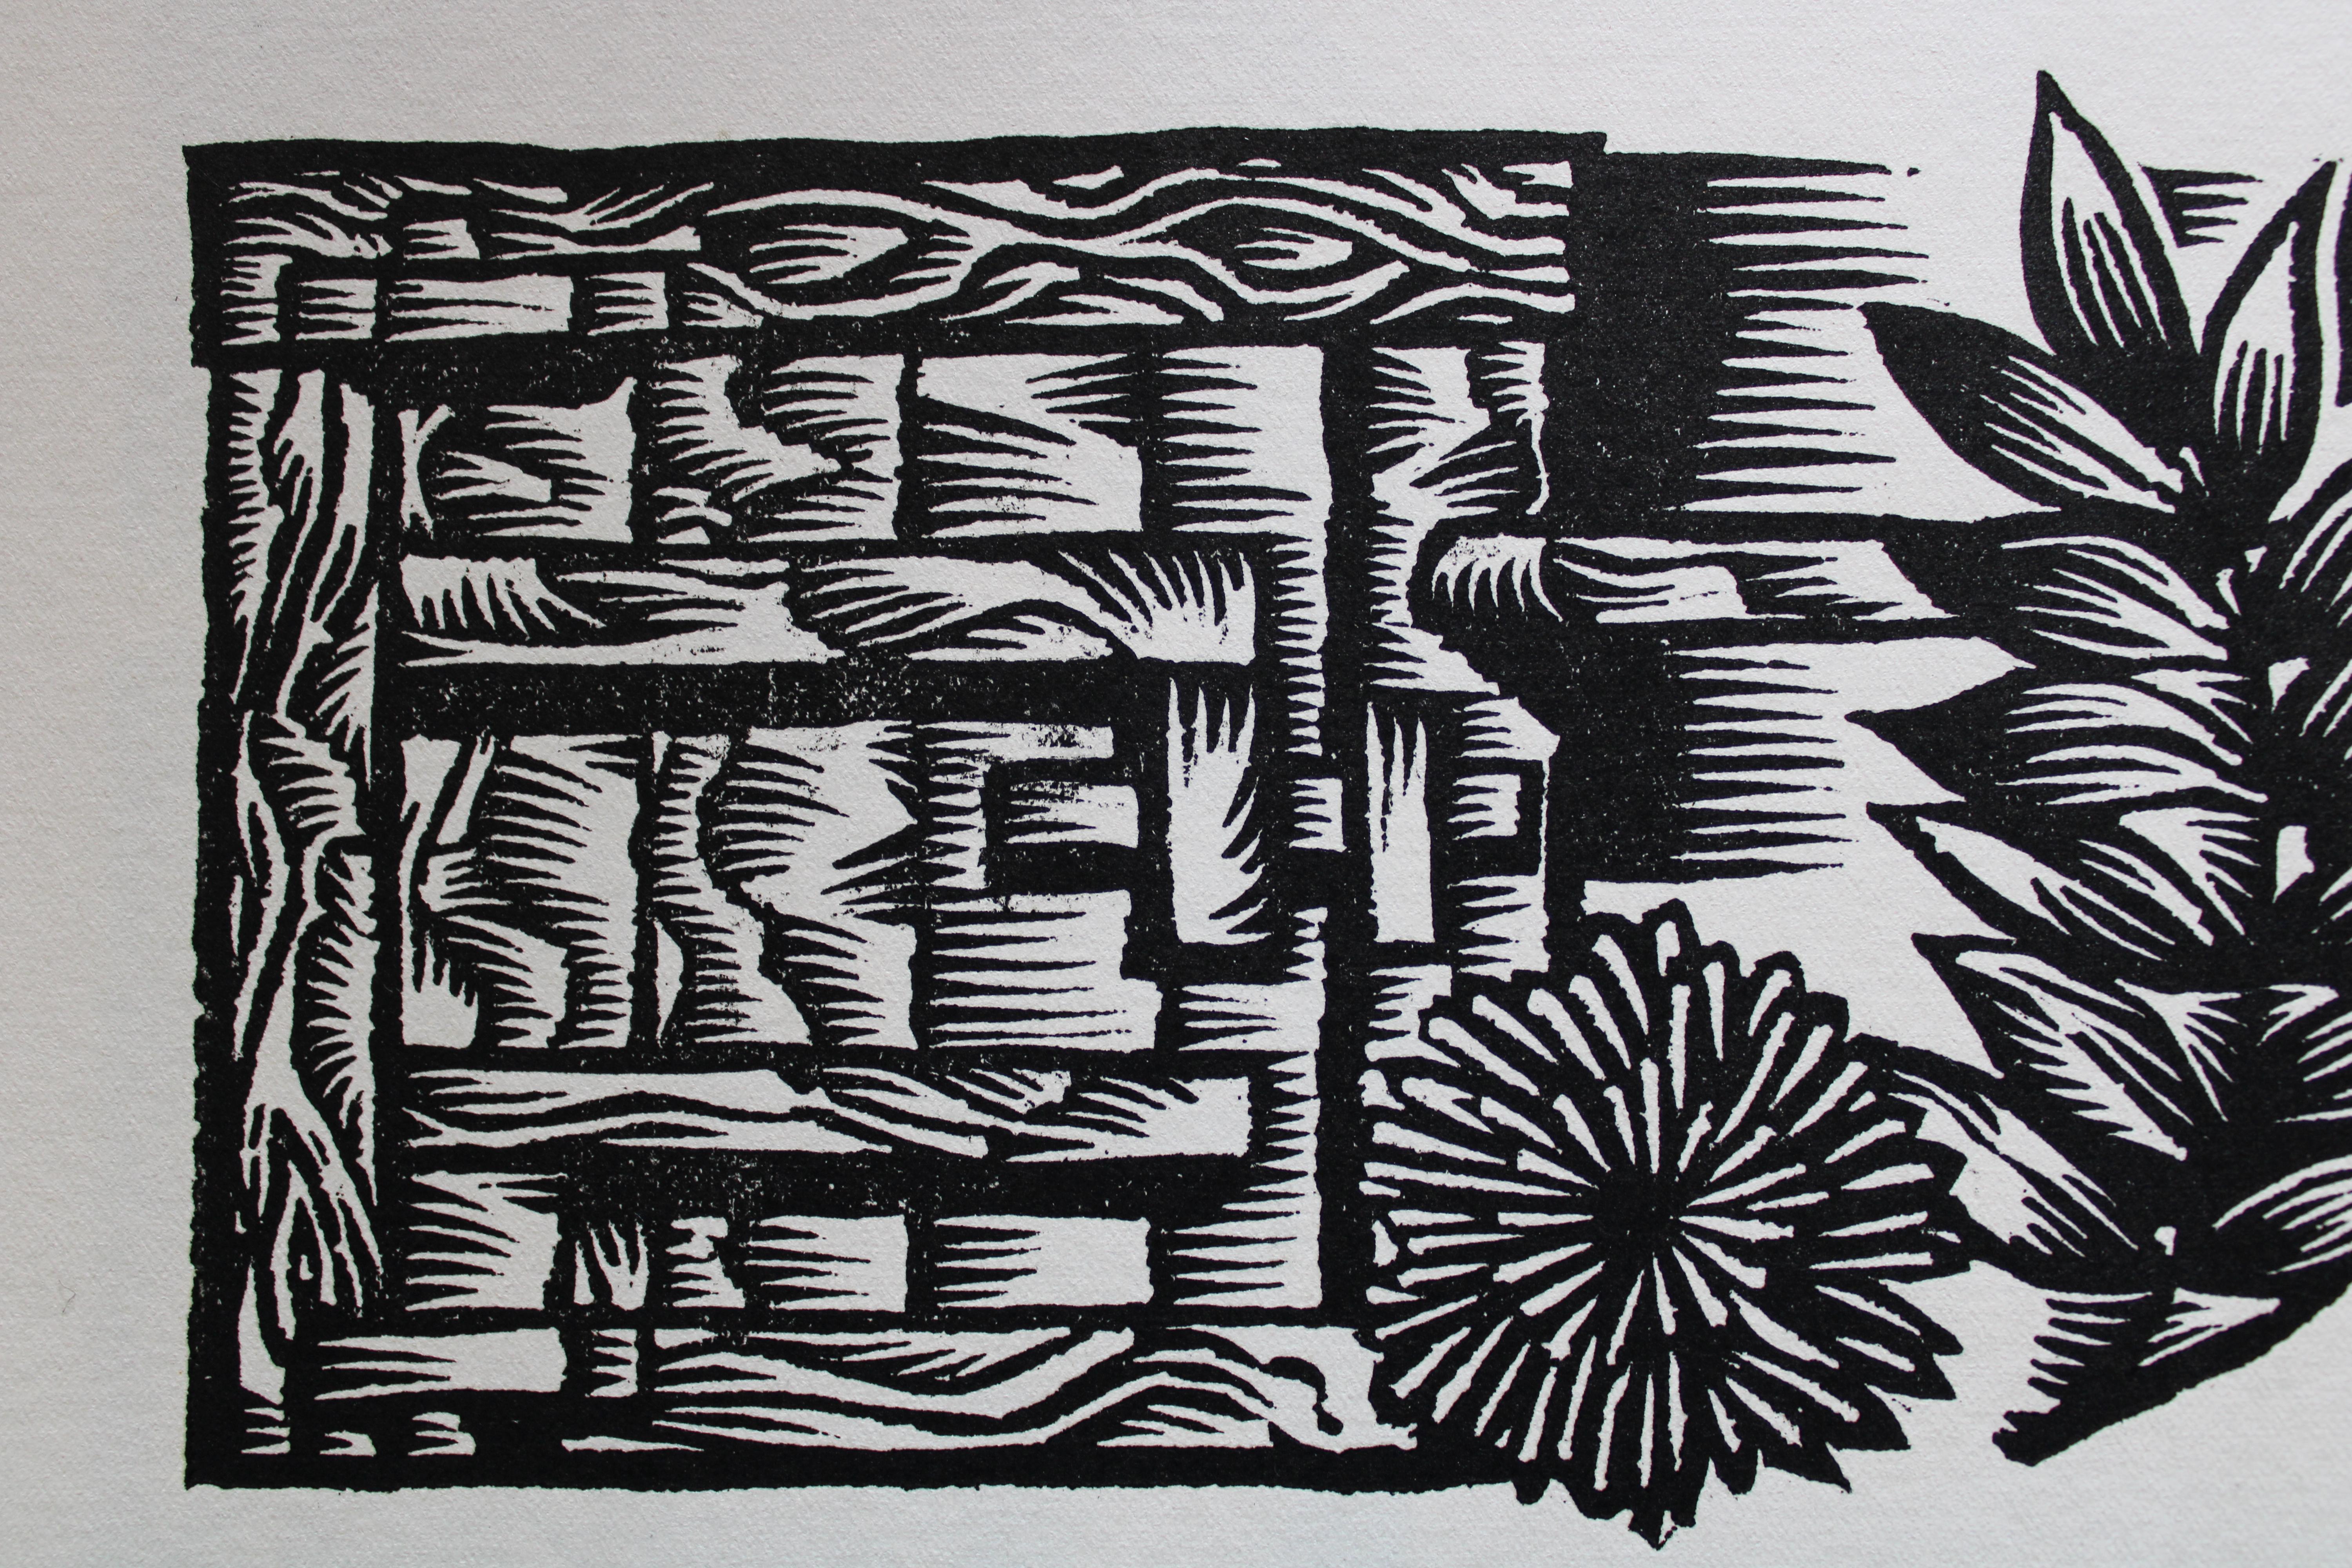 Midsummer ferns. 1984. Paper, linocut, 20x34 cm - Folk Art Print by Dainis Rozkalns